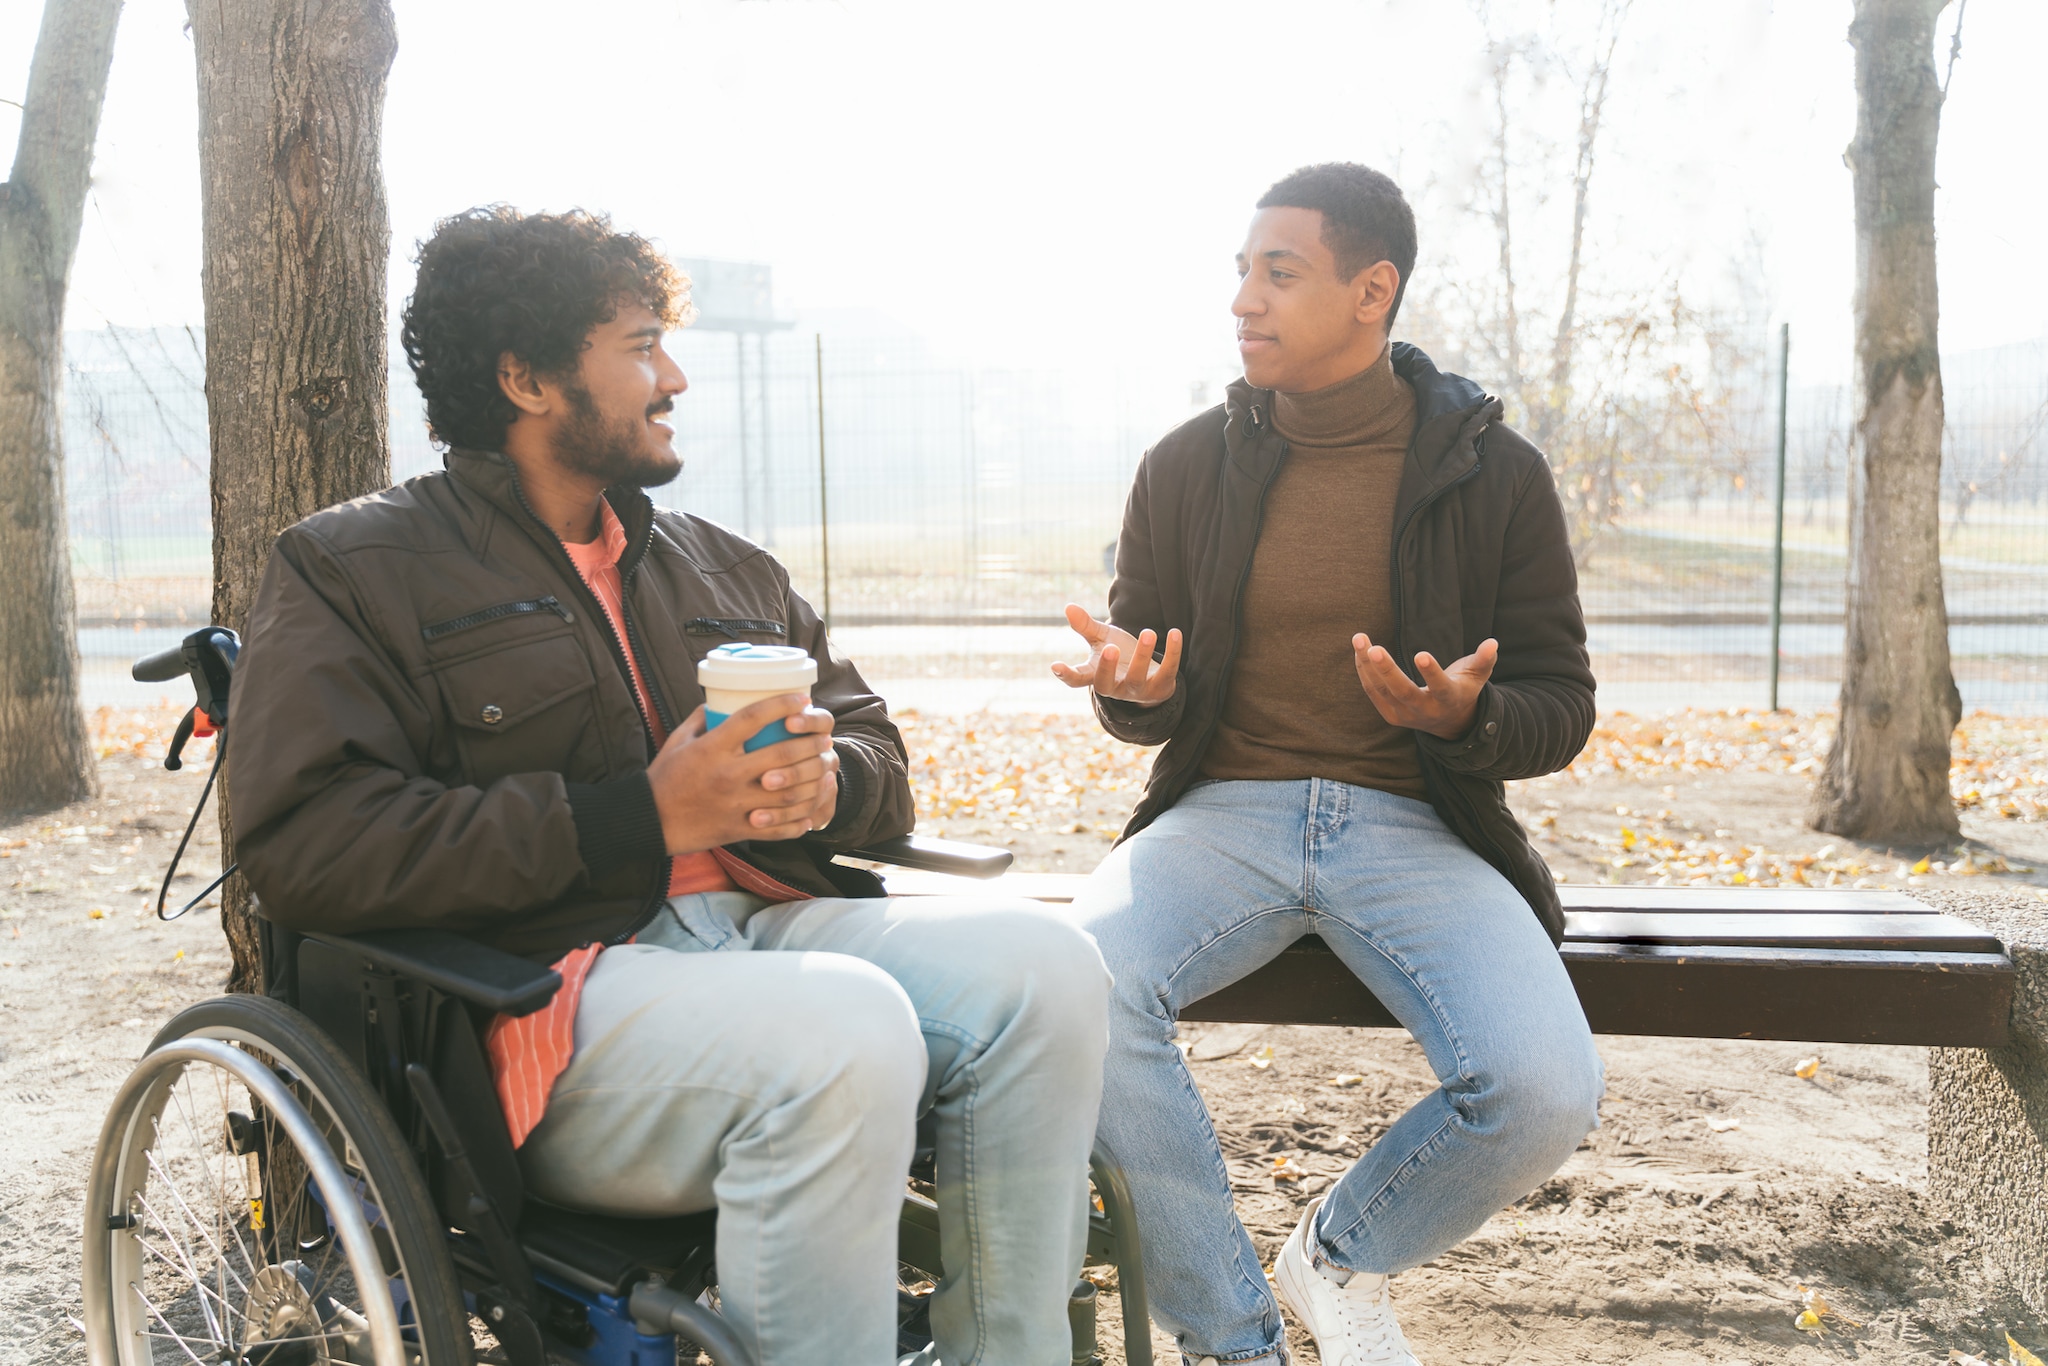 Dos jóvenes adultos sentados afuera, conversando.